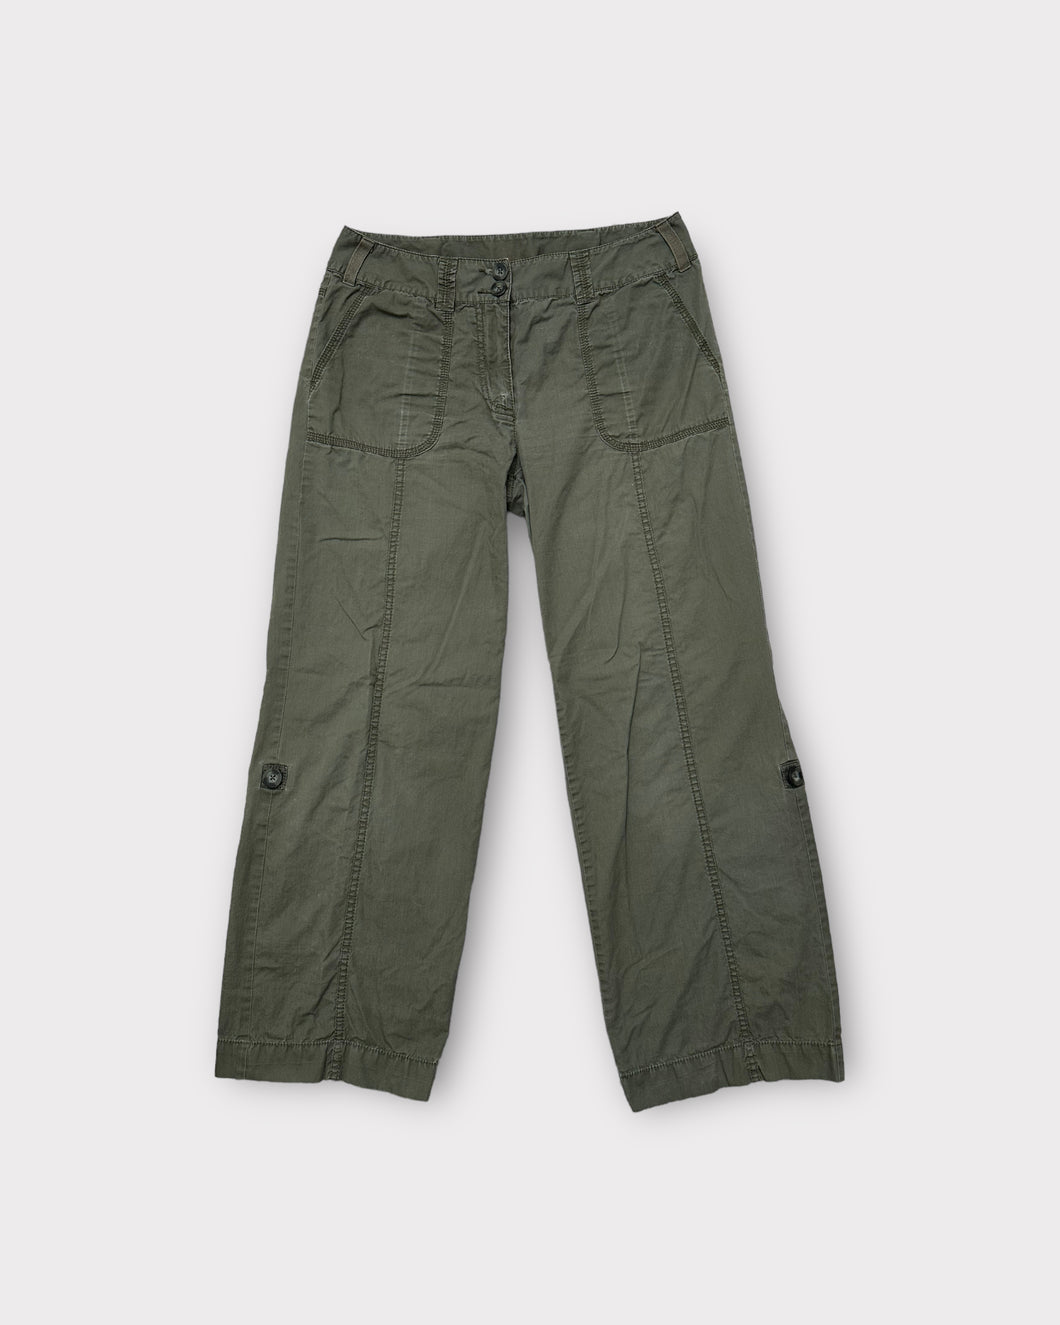 Caslon Green Low Rise Cargo Pants (6P)